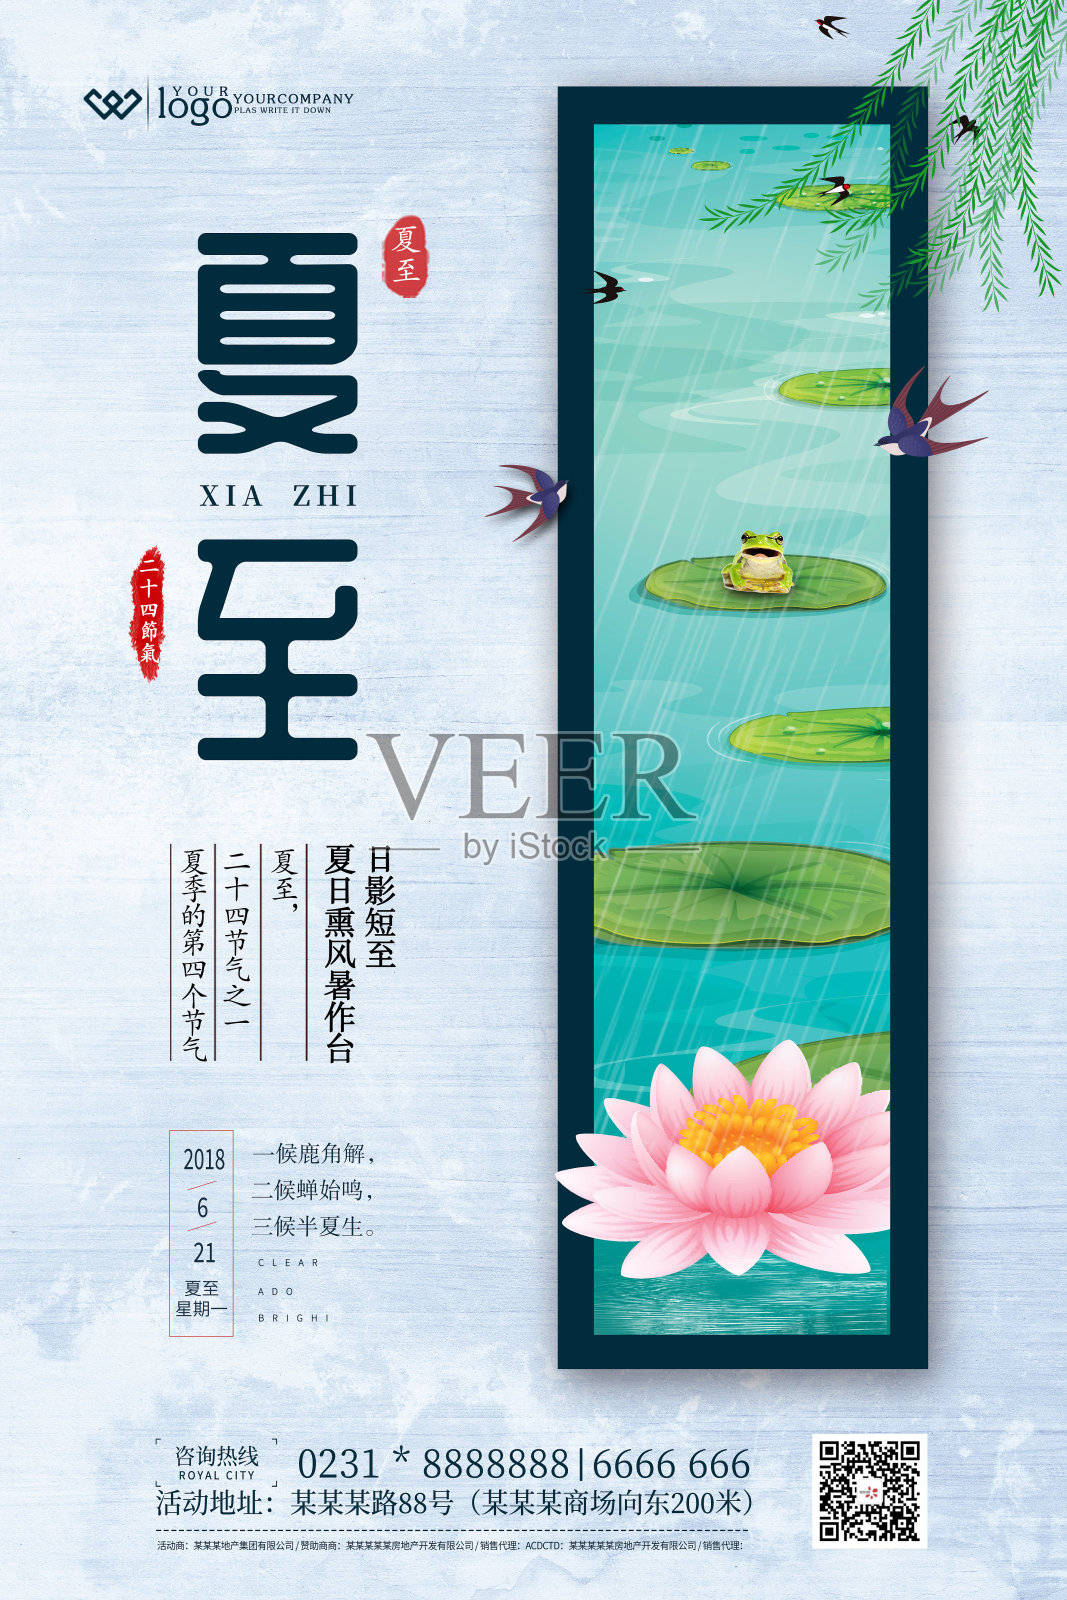 简约中国风夏至24节气创意海报设计模板素材